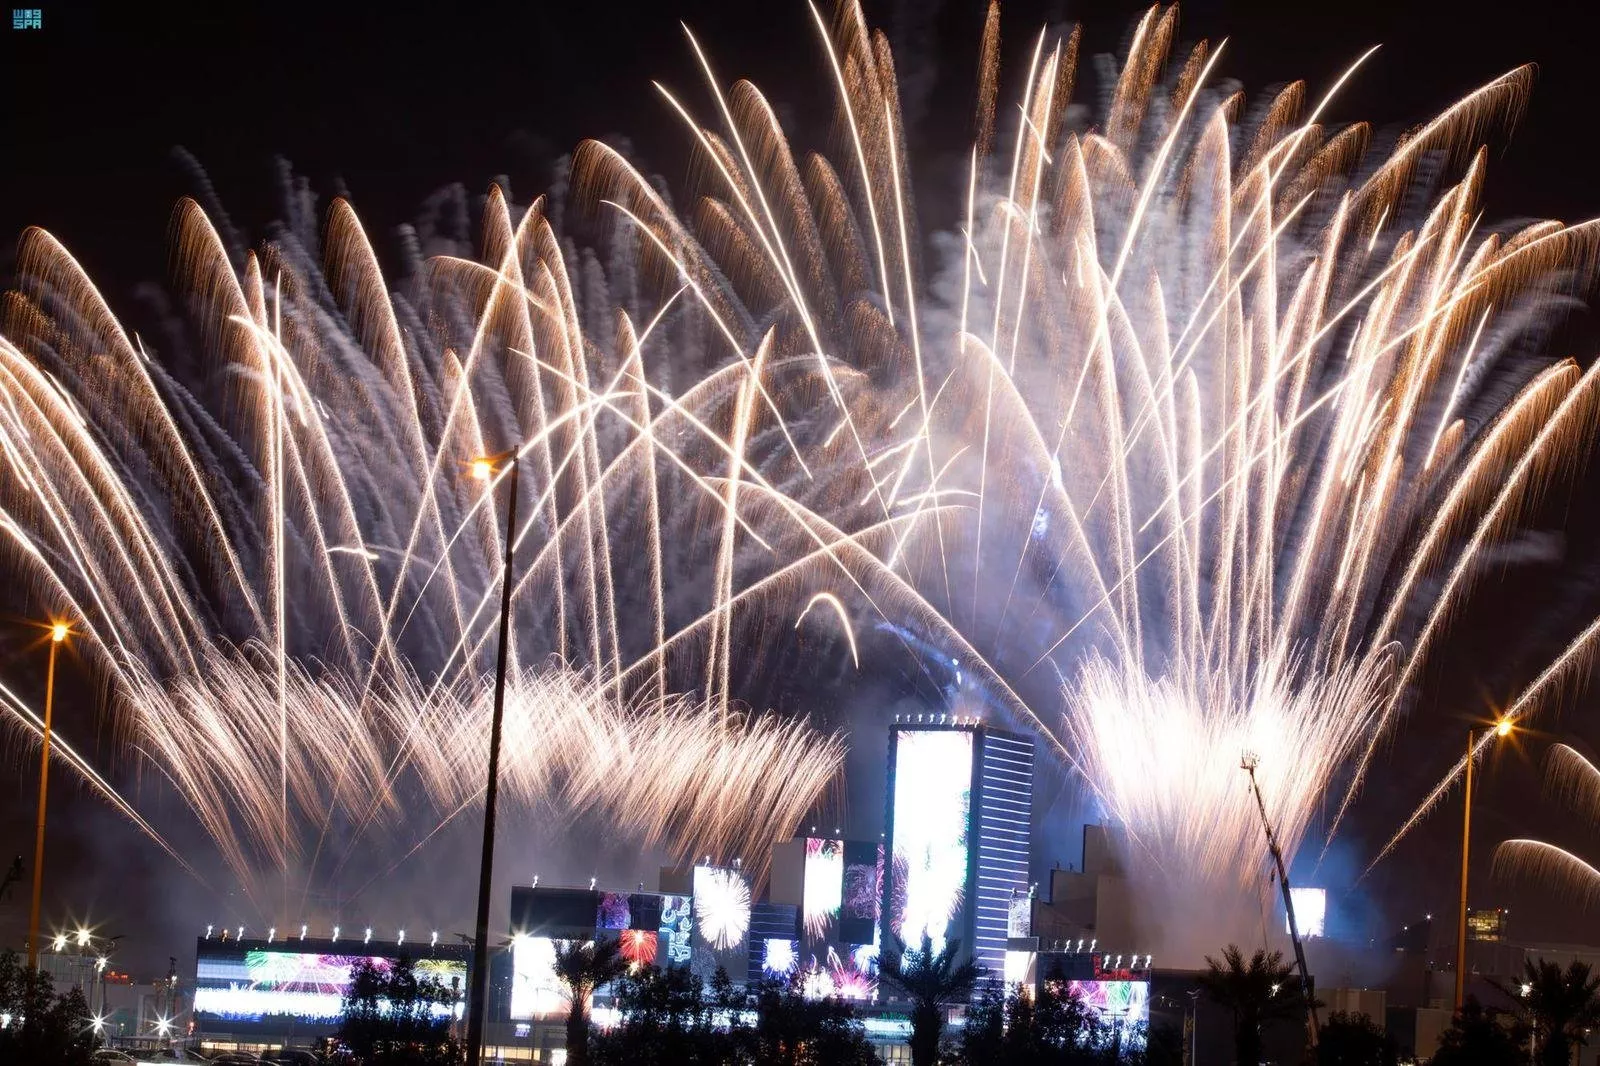 بالصور، افتتاح بوليفارد رياض سيتي جوهرة موسم الرياض 2021